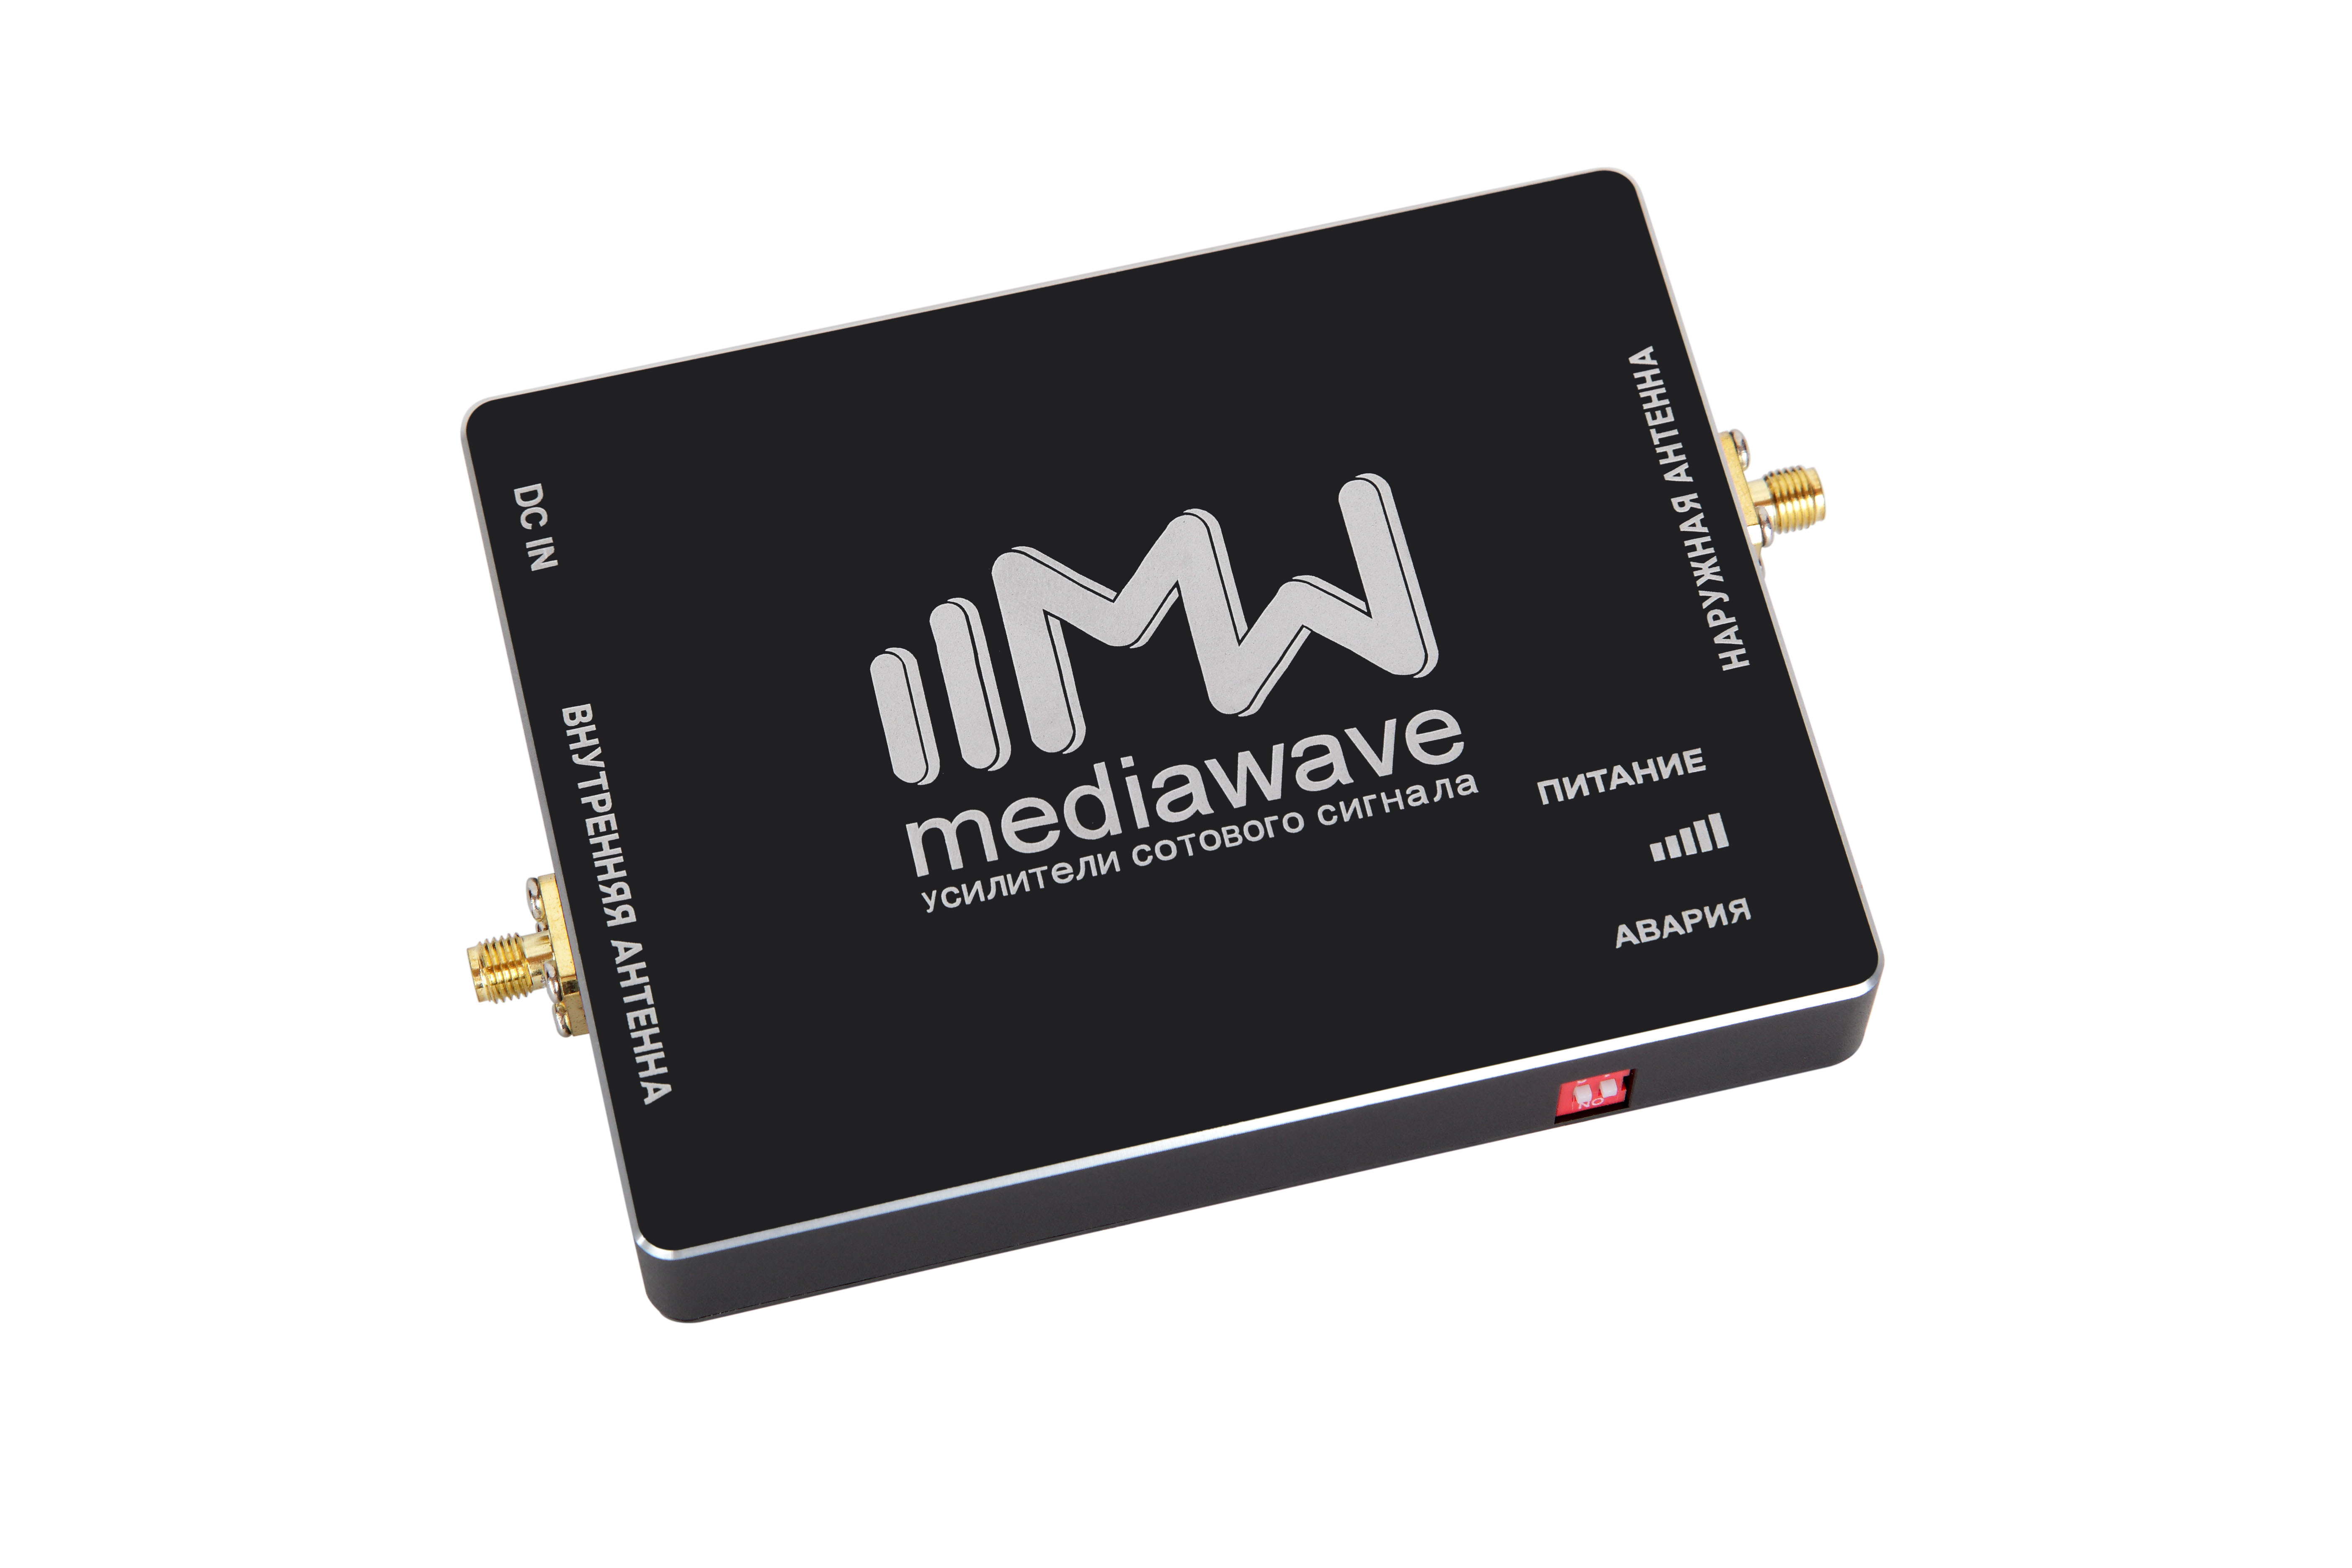 MWK-21-S: комплект усиления сотового сигнала и интернета 2100МГц (3G-UMTS), 65дб/30мВт, до 200м², Me